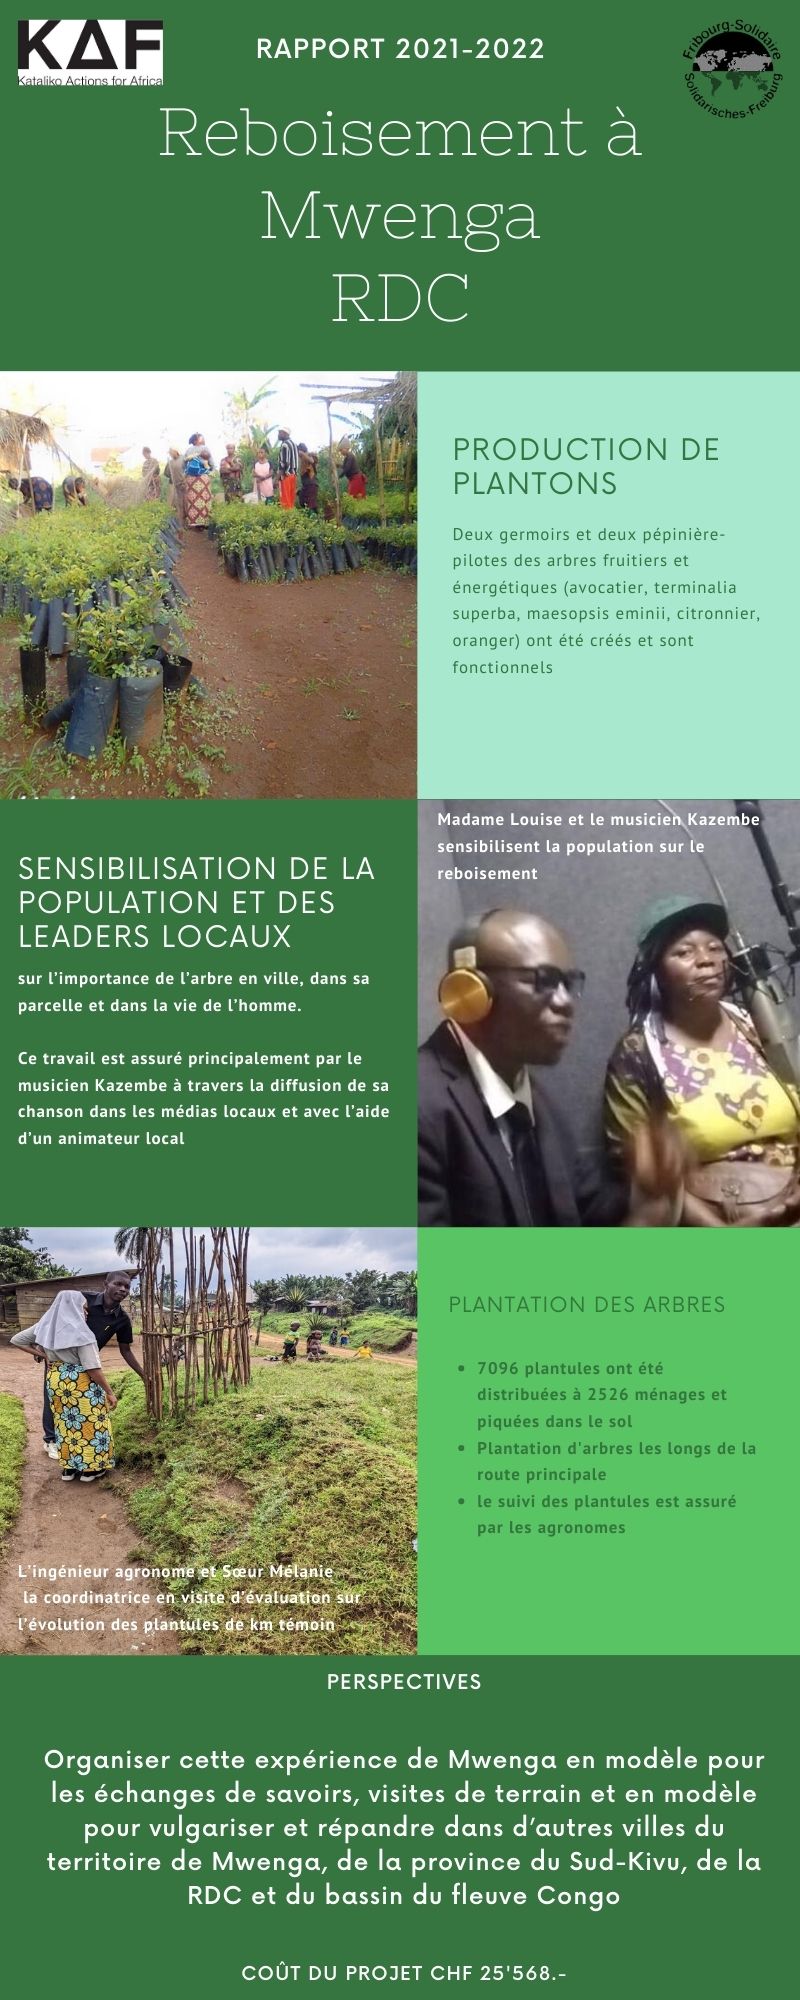 Infographie des résultats du projet de reboisement de KAF en RDC après 1 année